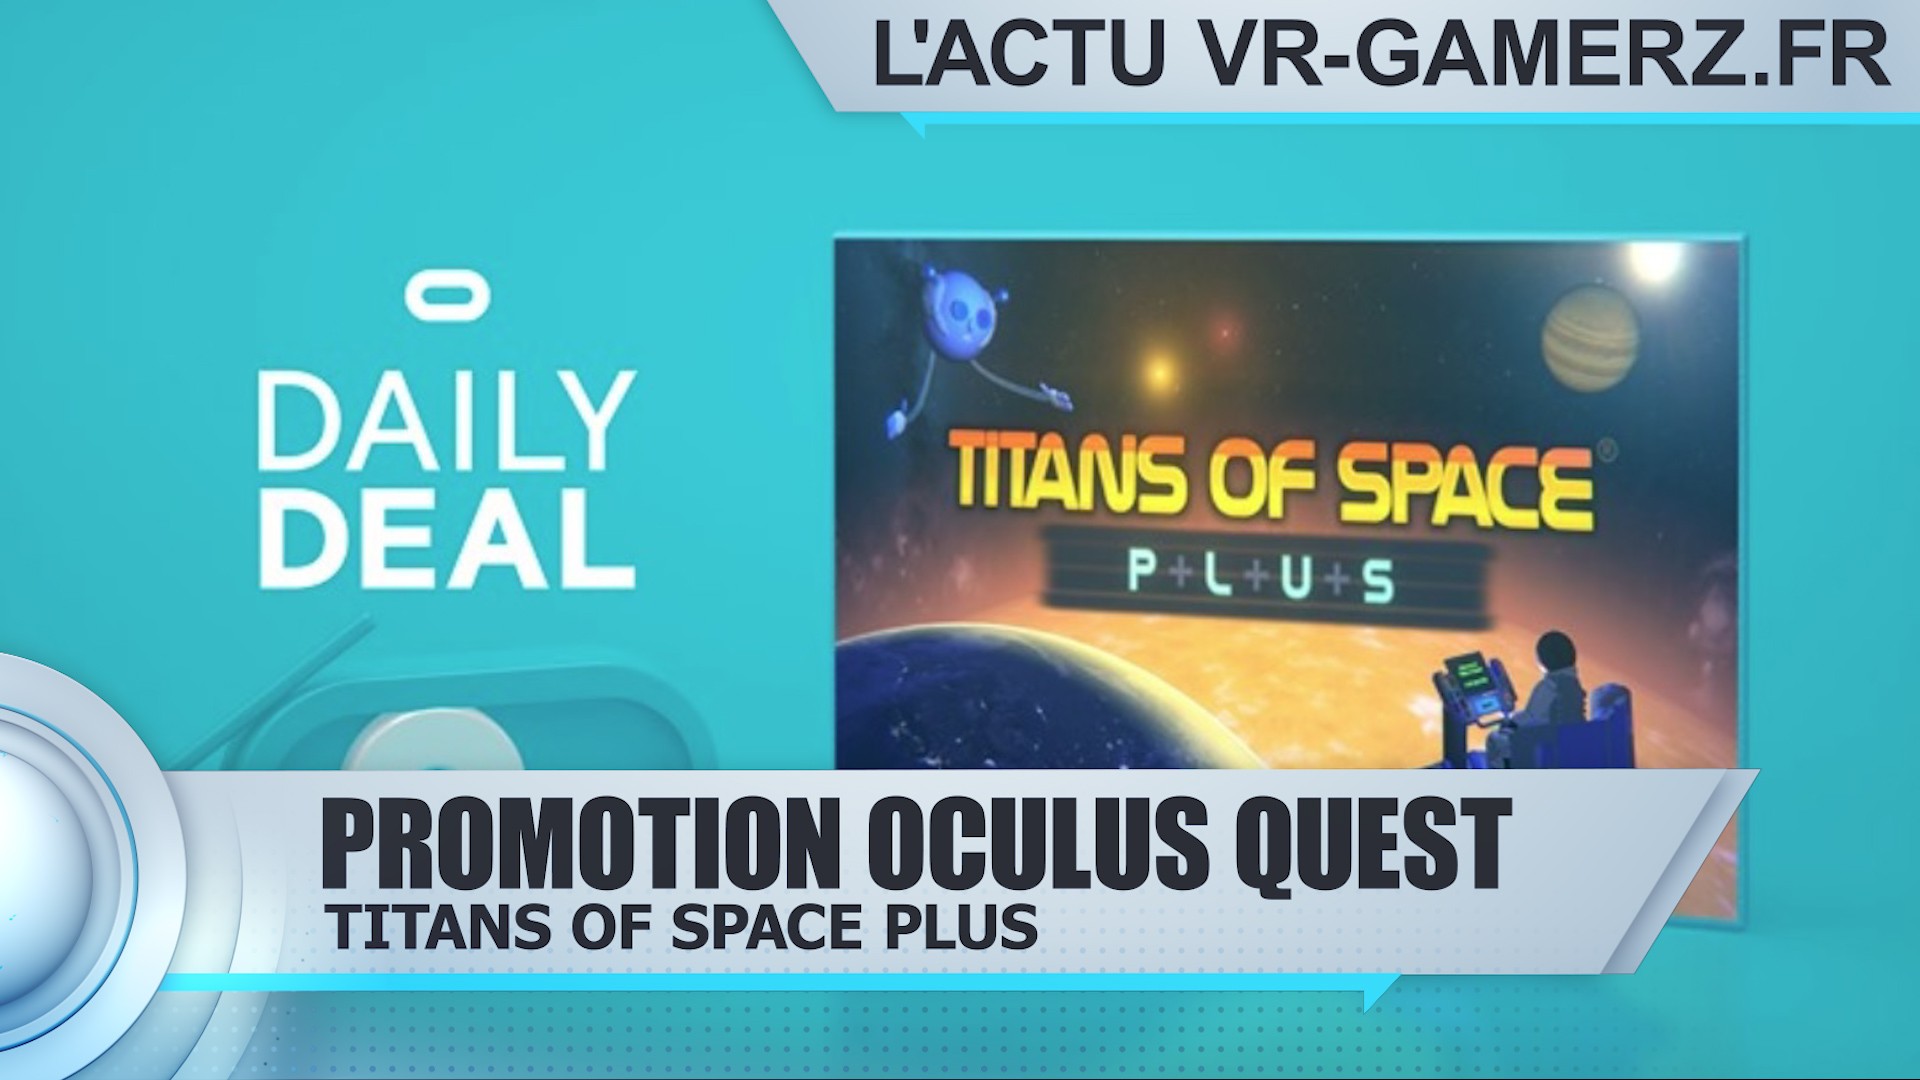 Titans of space plus est en promotion sur Oculus quest